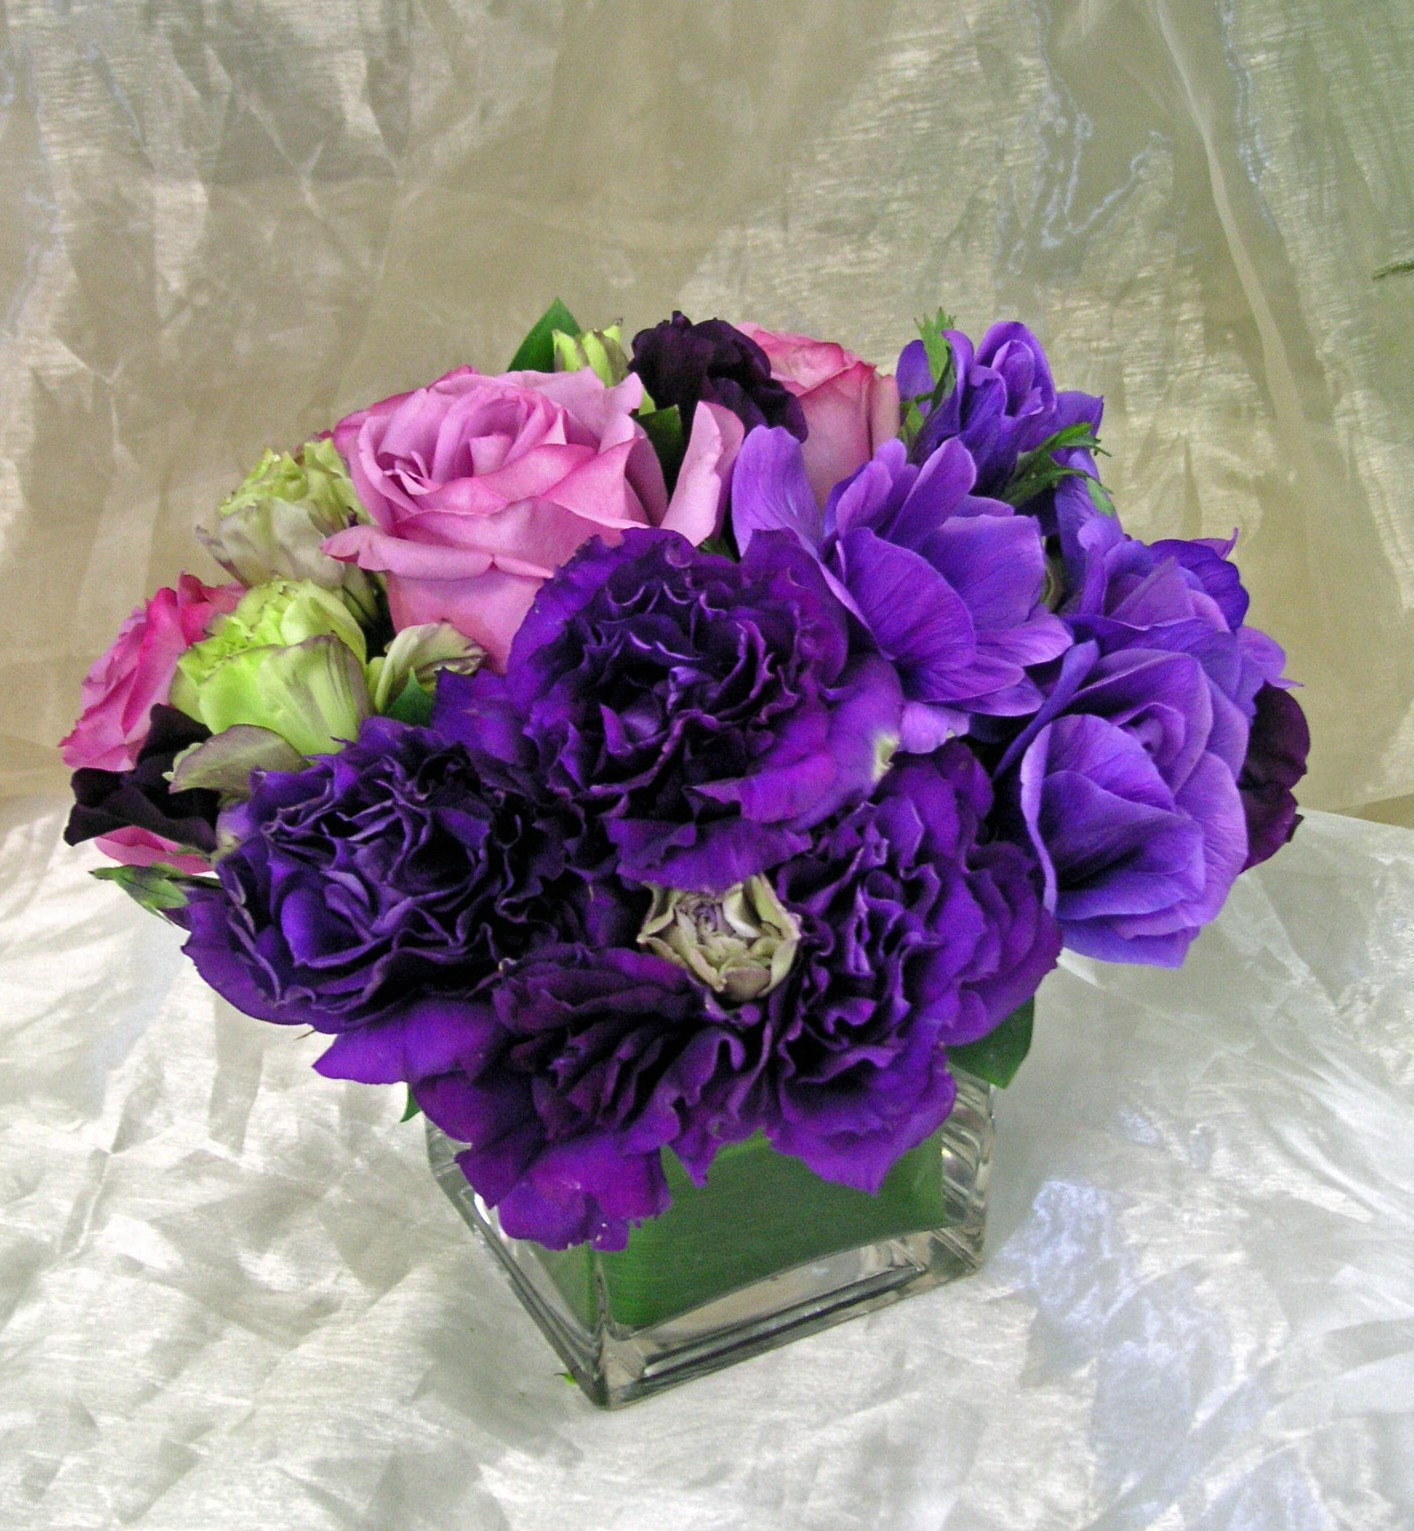 empty vase florist los angeles ca of purple celebration wfg235 in los angeles ca westwood flower garden throughout purple celebration wfg235